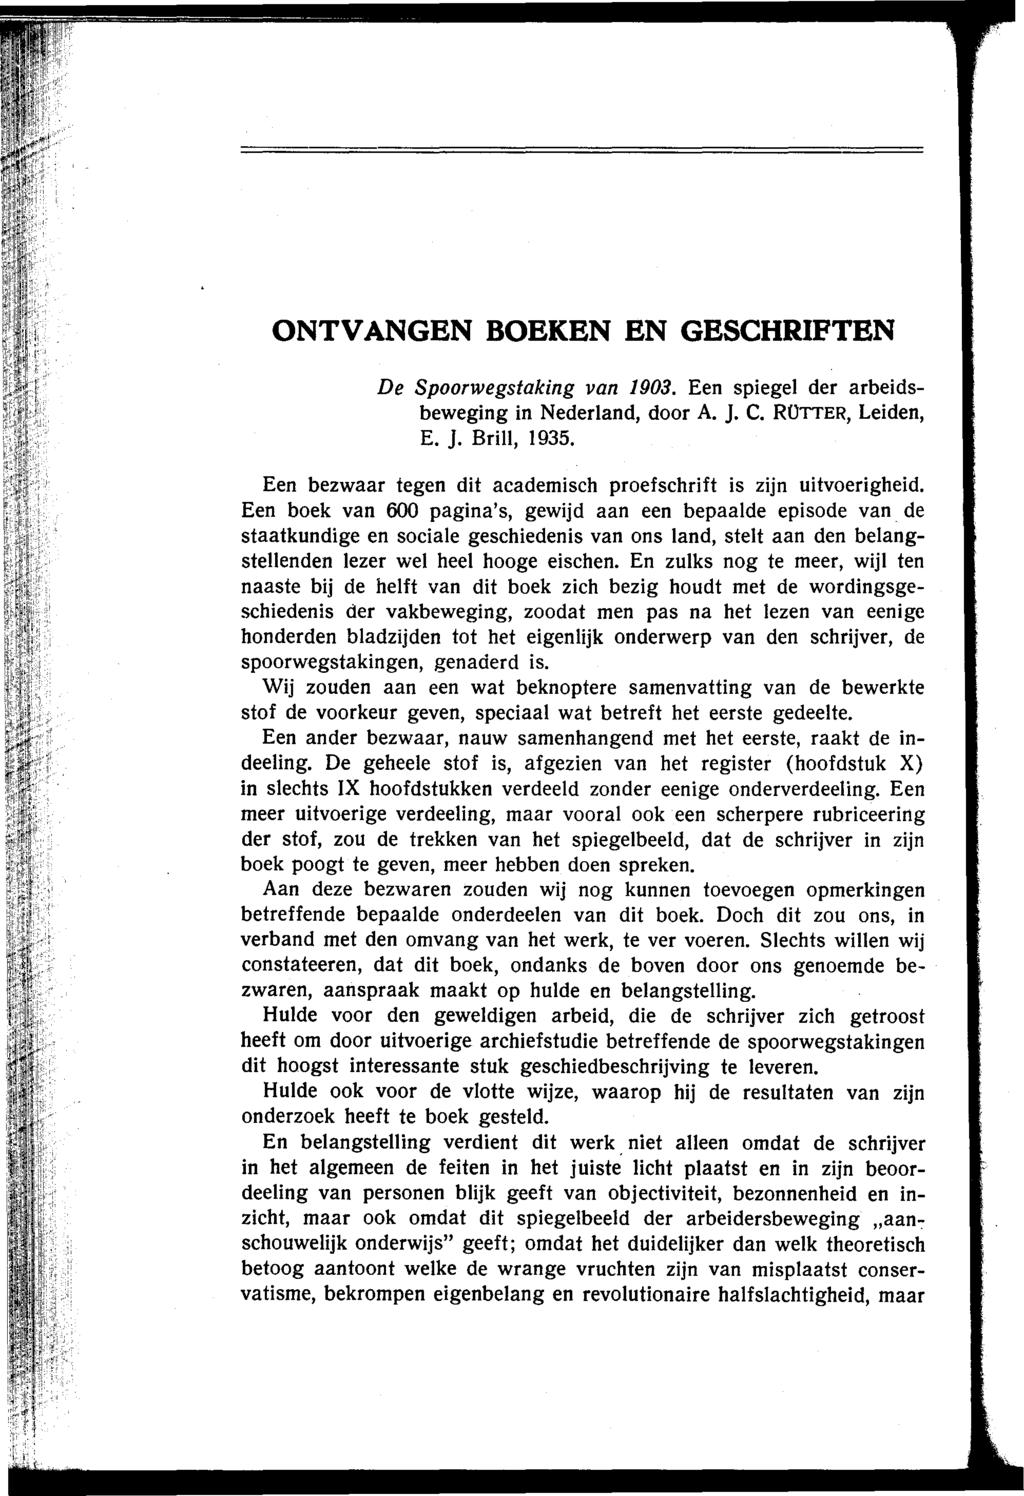 ONTVANGEN BOEKEN EN GESCHRIFTEN De Spoorwegstaking van 1903. Een spiegel der arbeidsbeweging in Nederland, door A. ]. C. ROTTER, Leiden, E. ]. Brill, 1935.